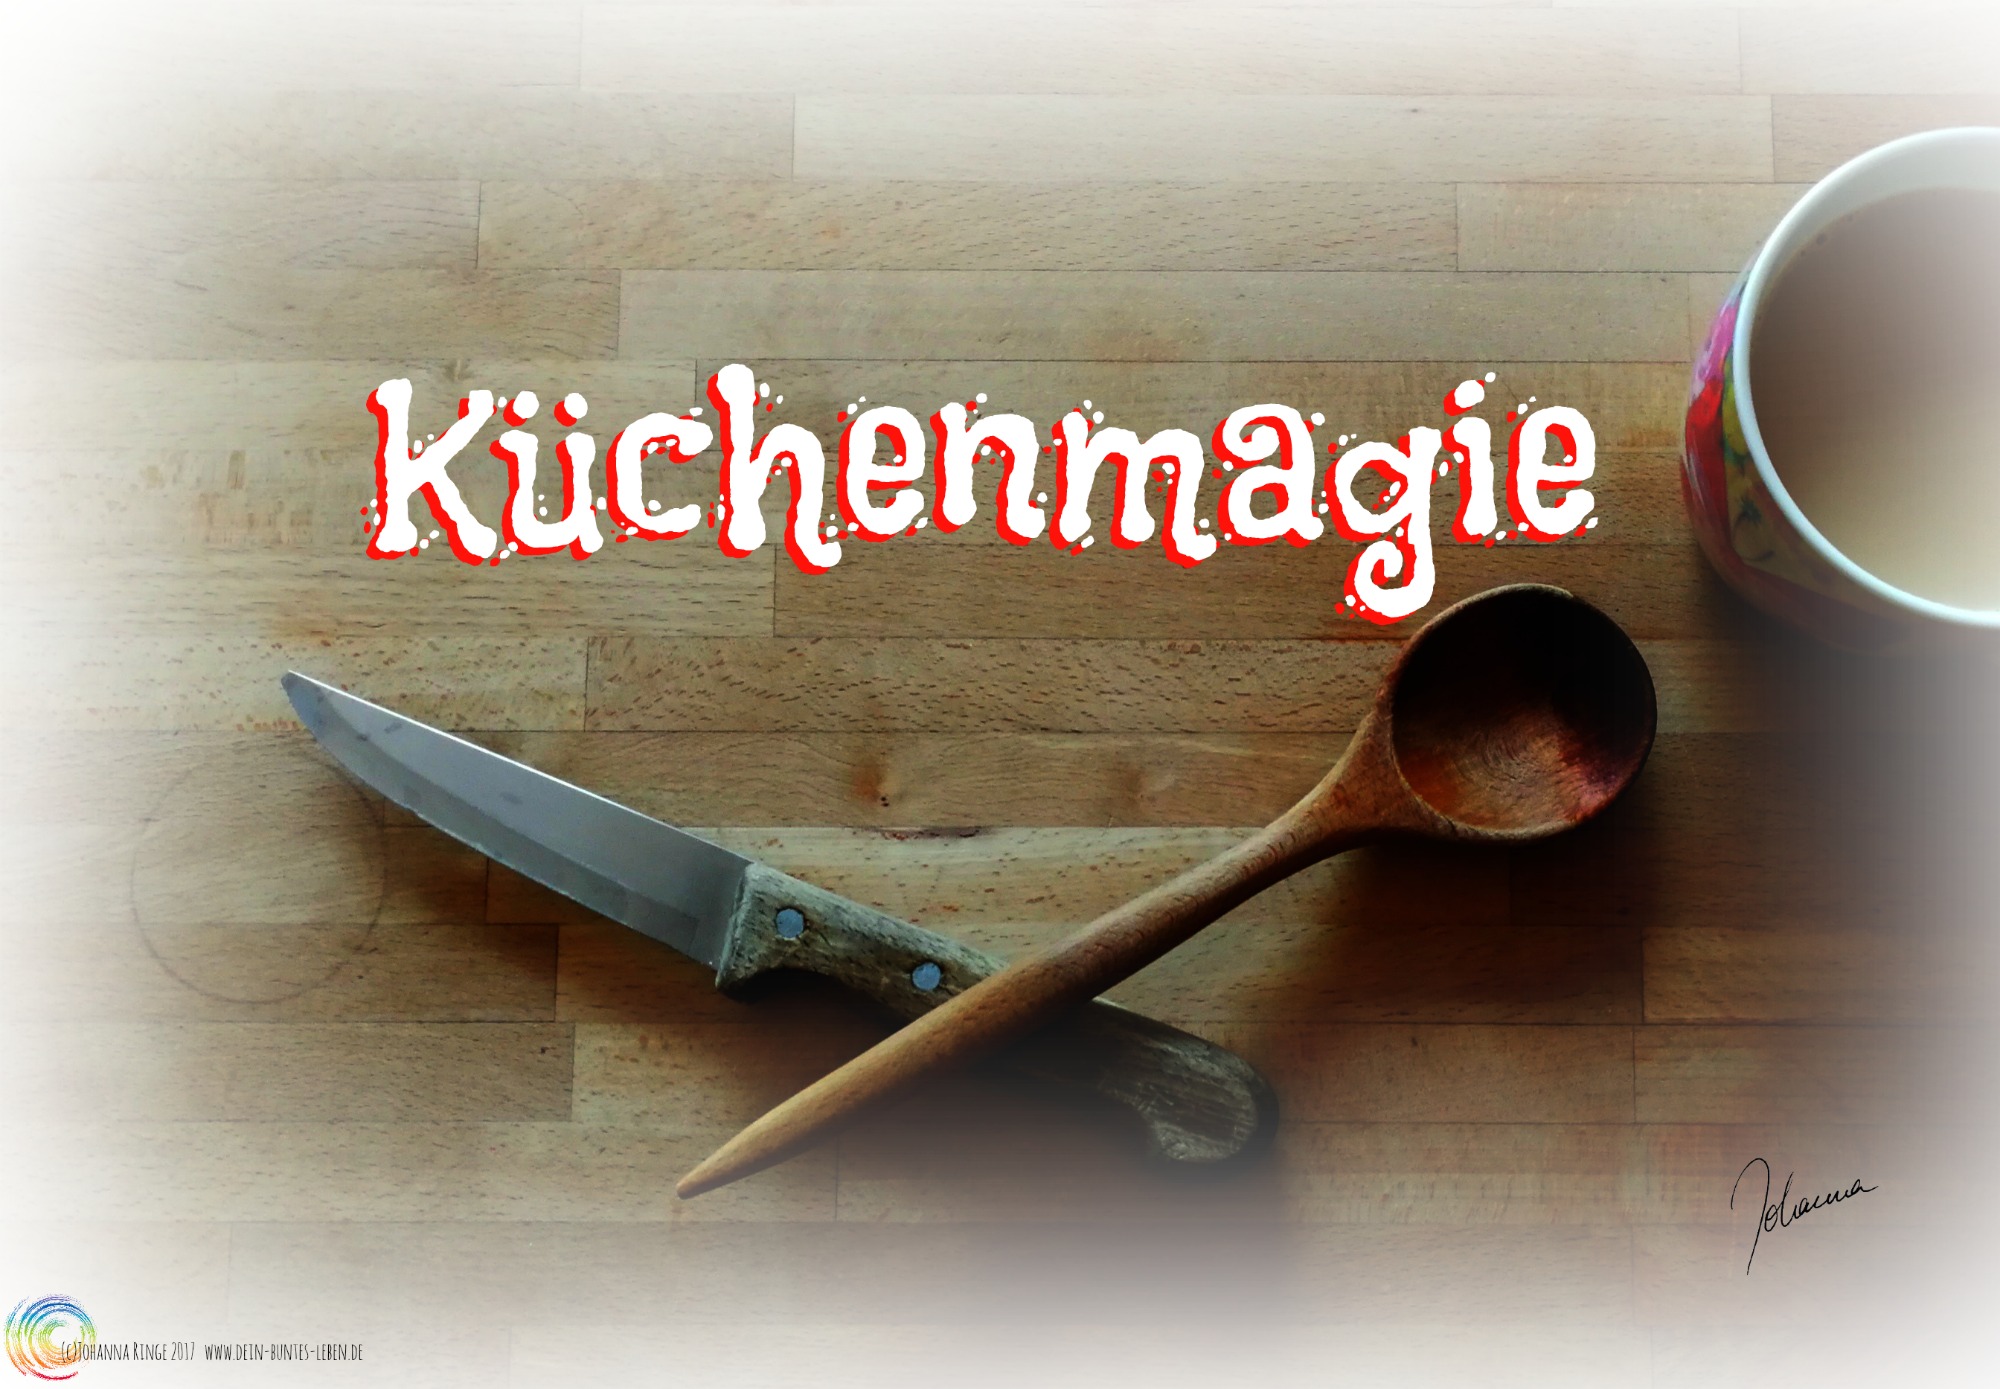 Das Wort Küchenmagie über miteinander gekreuztem Messer und Kochlöffel (c)2017 Johanna Ringe www.dein-buntes-leben.de